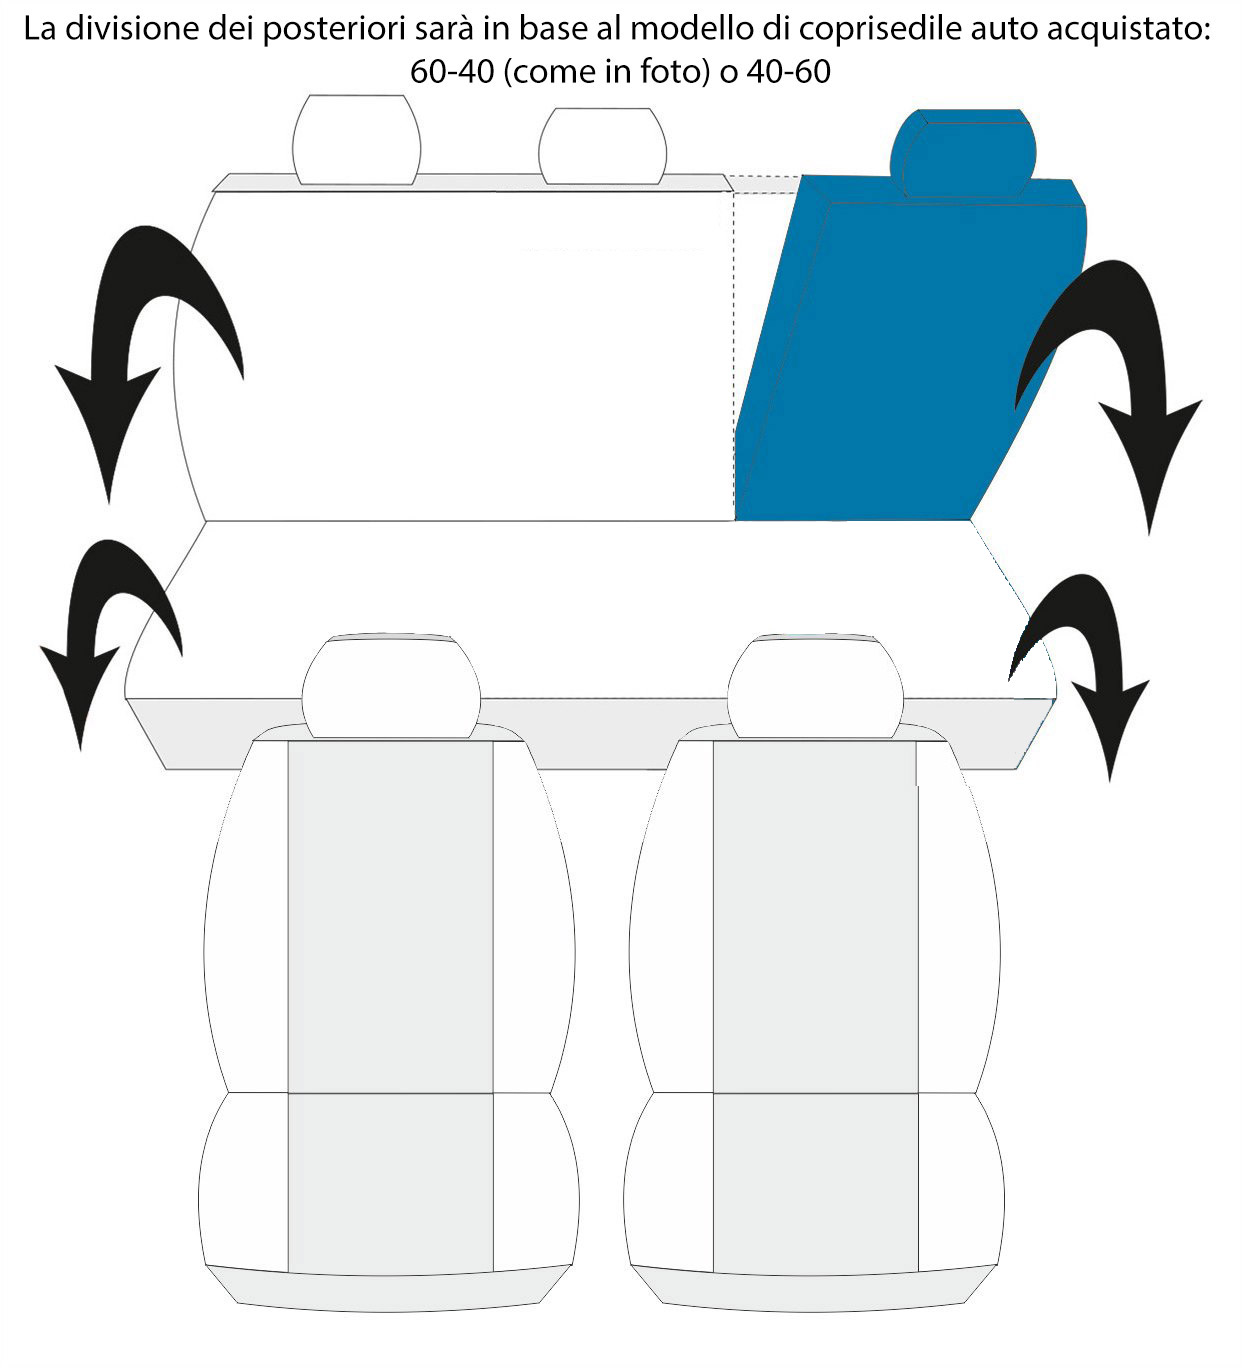 Lupex Shop Copri-sedili Auto Compatibili Panda Seconda Serie (mod.169)  Versione 60e40, Nero Mimetico Chiaro, Set Copri-Sedile Anteriori e  Posteriori, Logo Ricamato, Airbag Compatibile